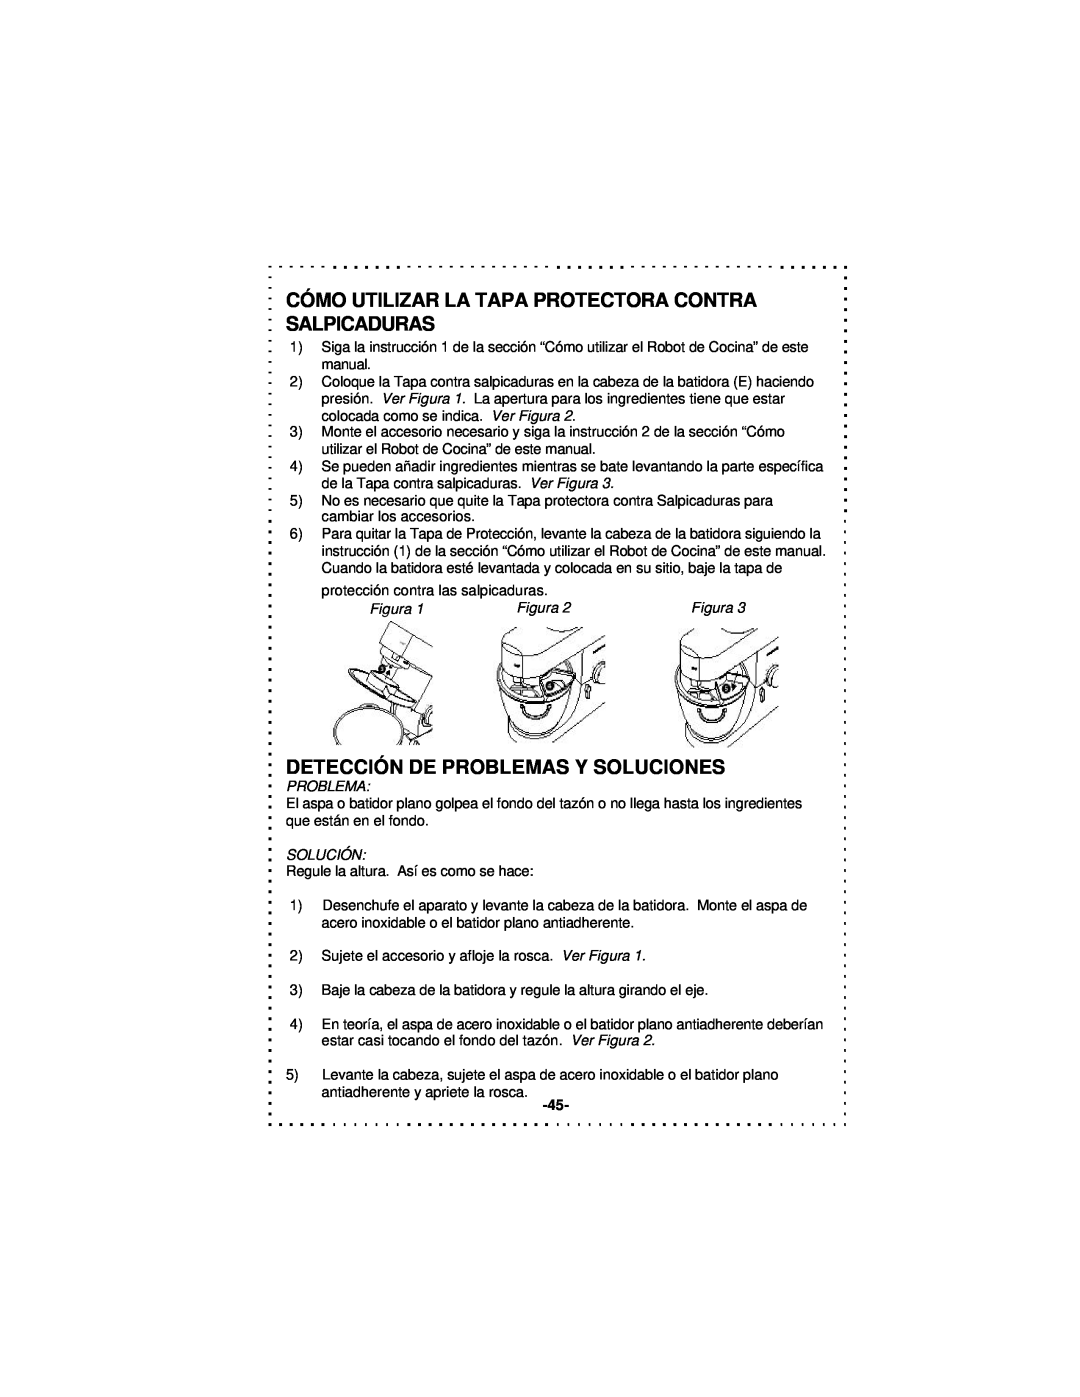 DeLonghi DSM5 - 7 Series instruction manual Detección De Problemas Y Soluciones, Figura, Solución 